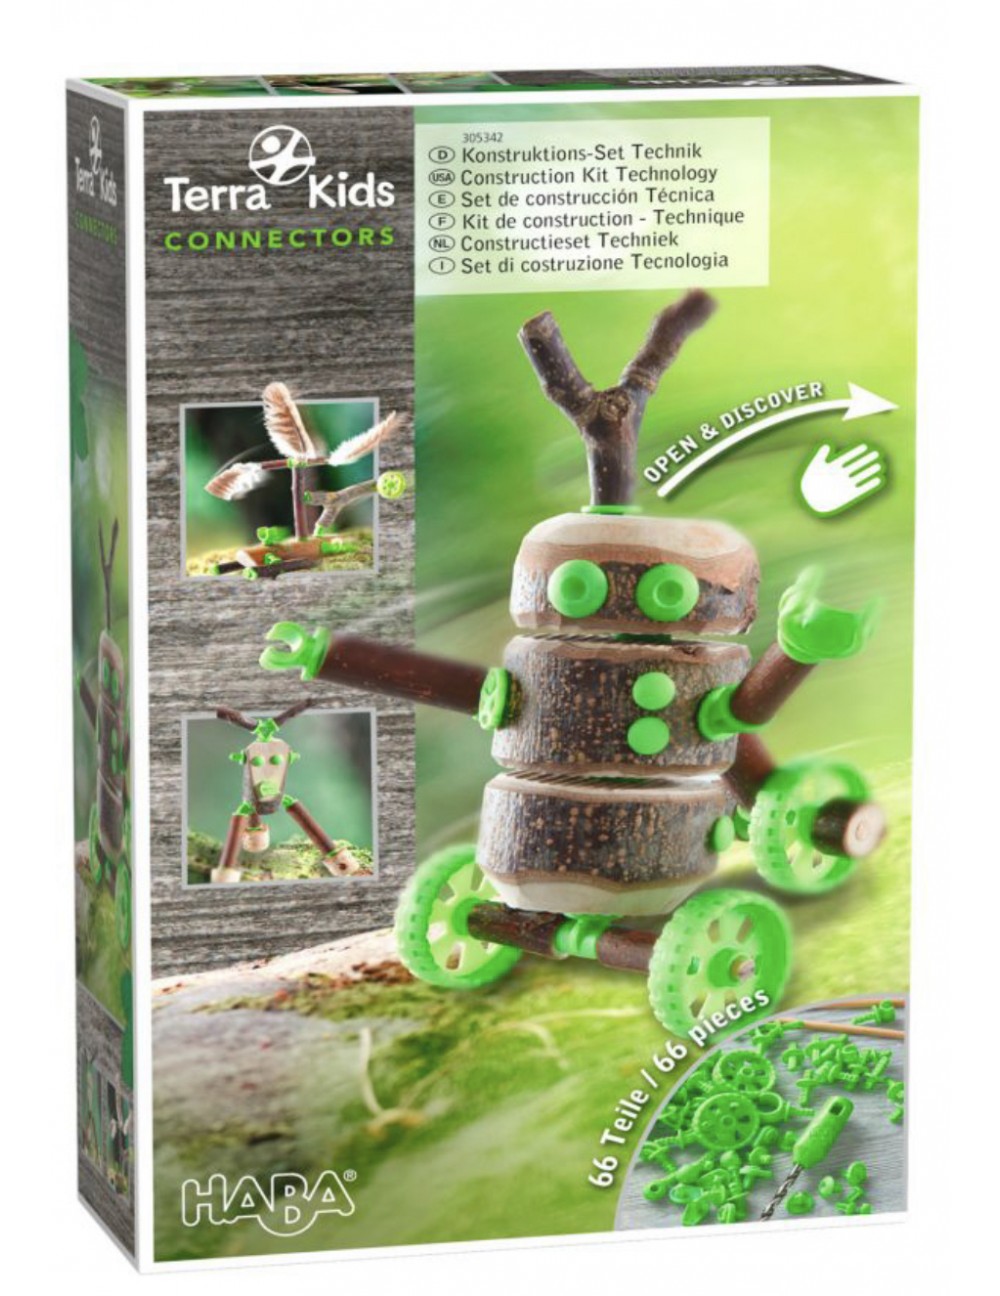 Connectors Terra kids kit technique